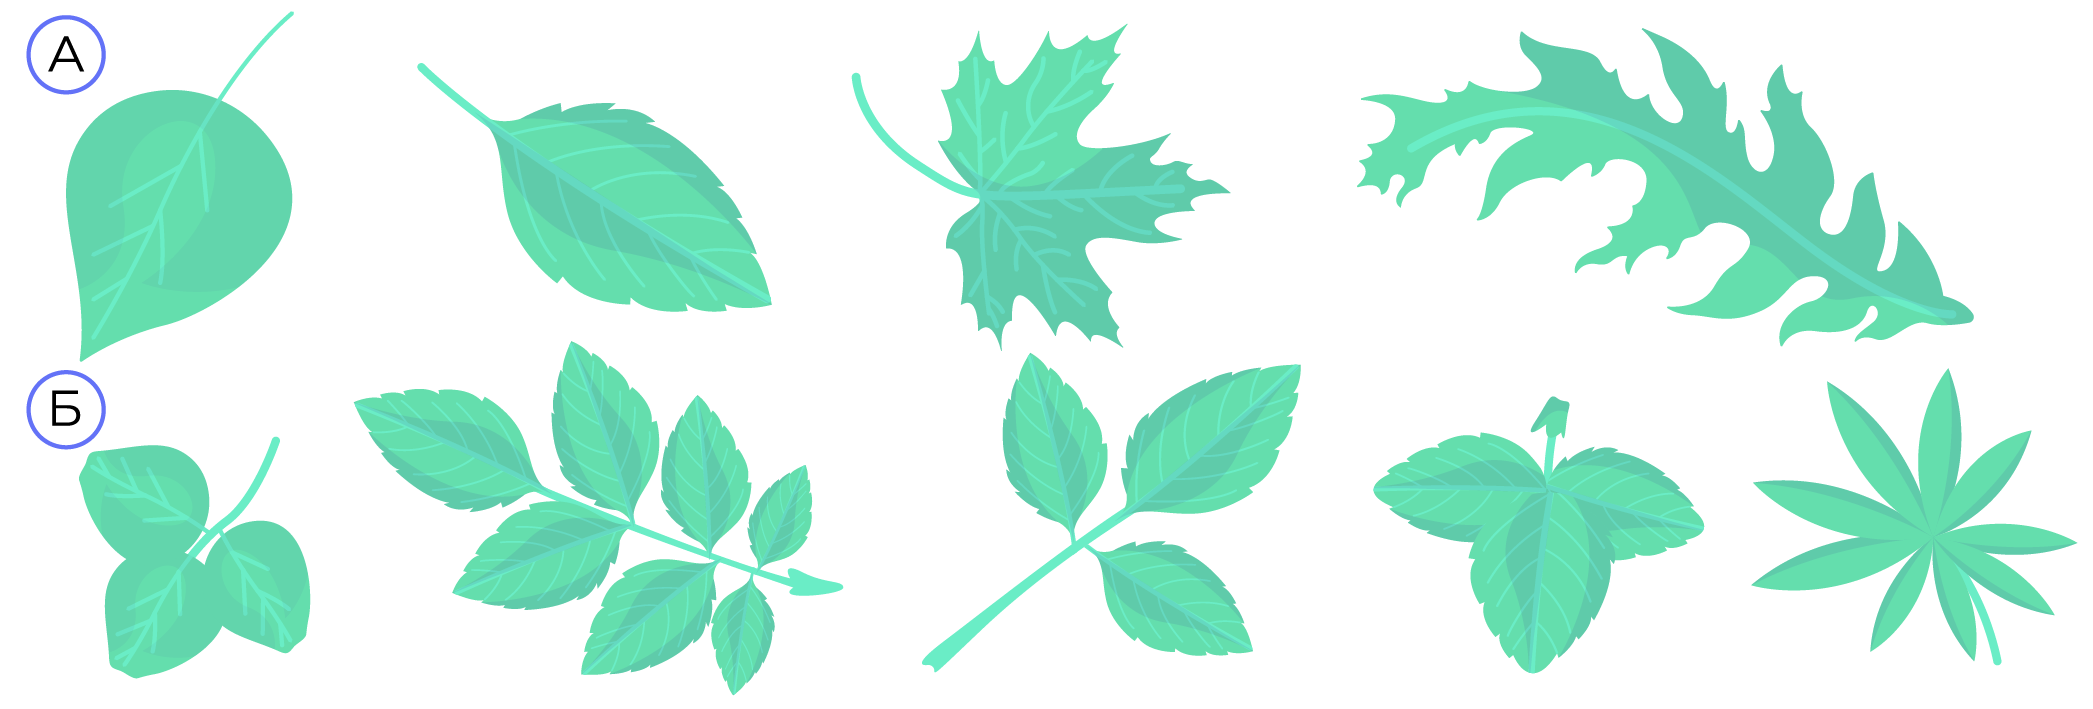 Рис. 5. А — простые листья; Б — сложные листья